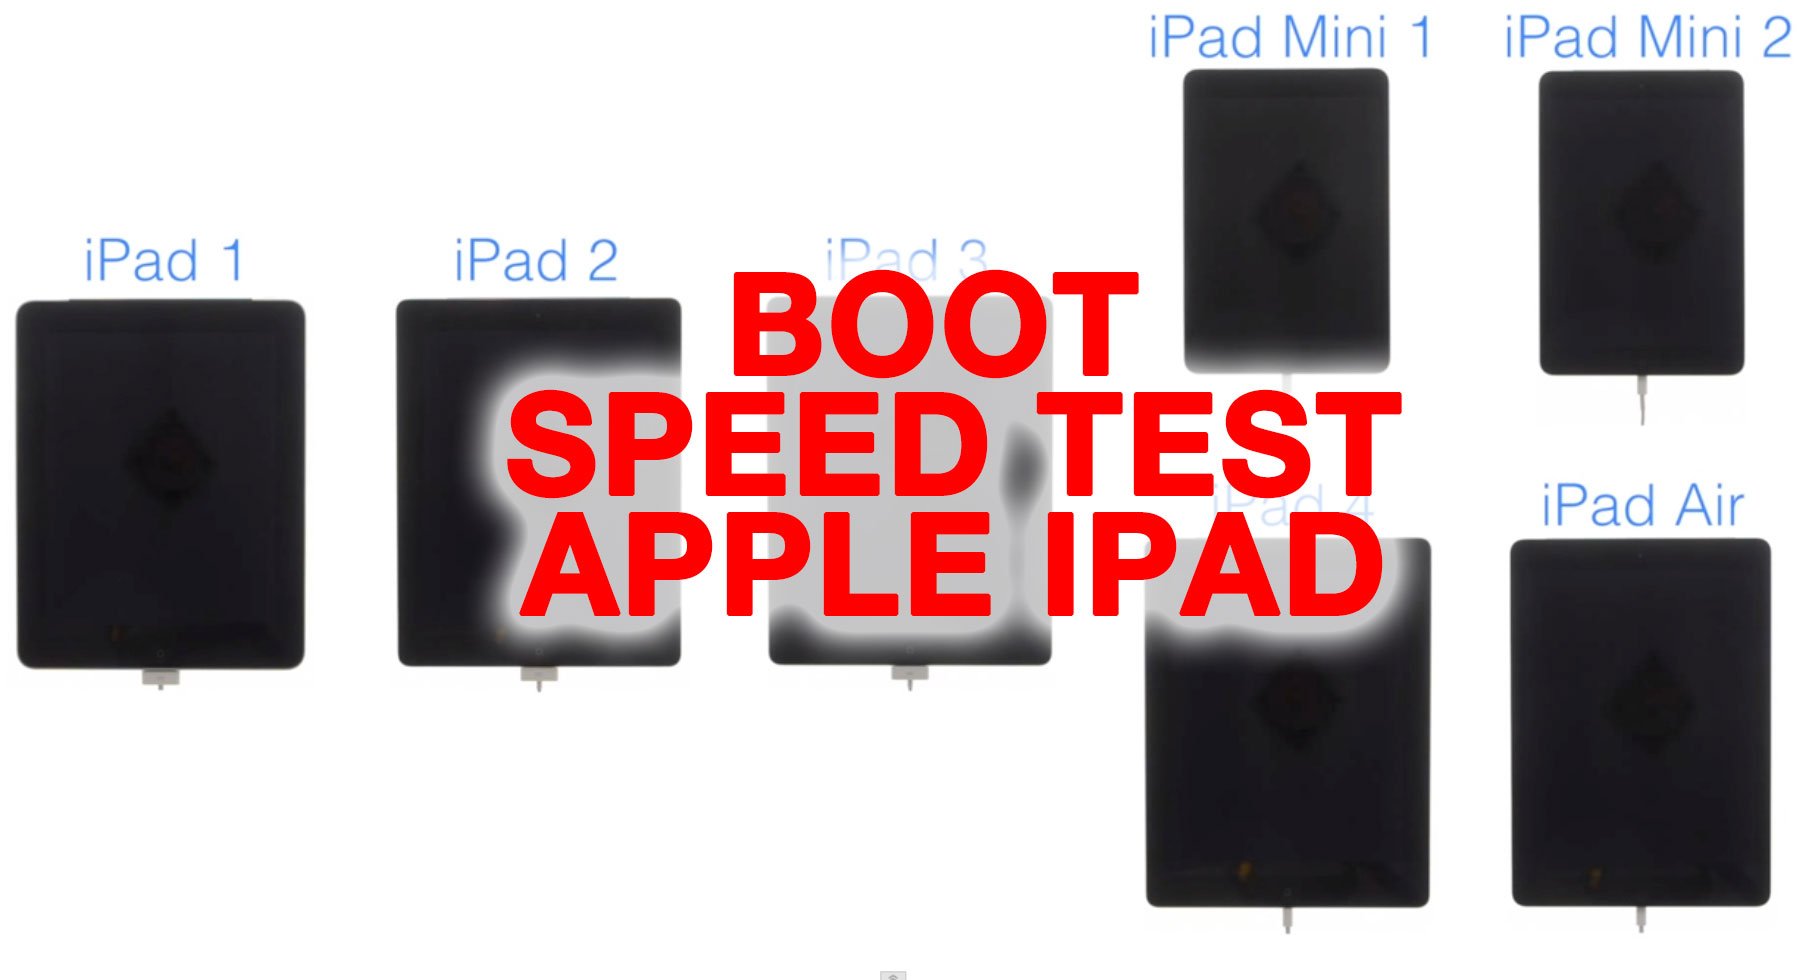 Video: Boot-Speed Test iPad Air vs. Retina iPad mini vs. iPad mini vs. iPad 4, iPad 3, iPad 2 vs. iPad 1 9